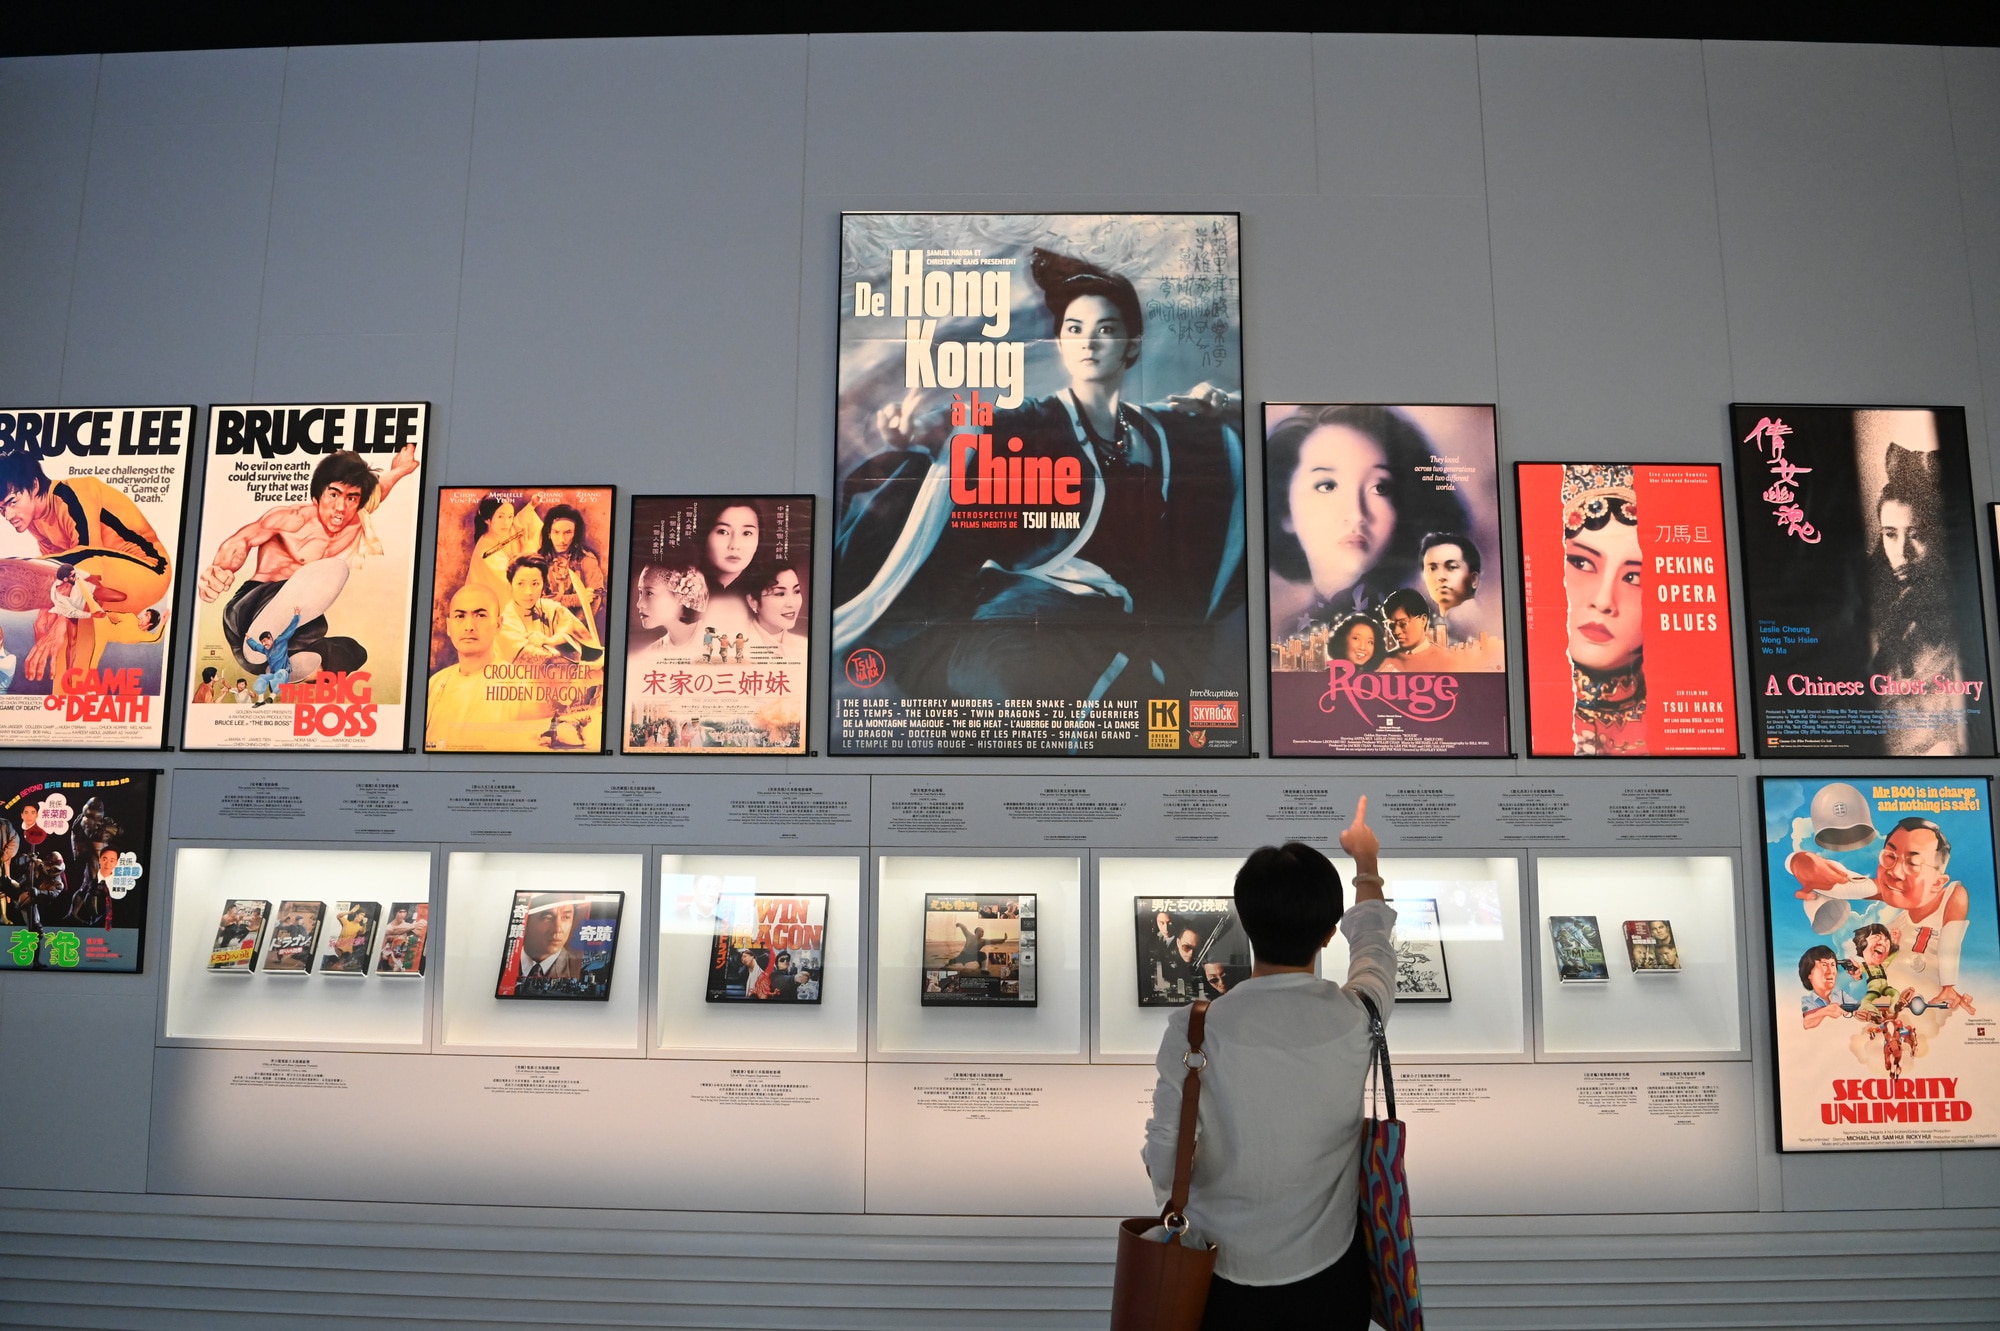 Triển lãm Hong Kong Pop 60+ tại Bảo tàng Di sản Hong Kong hấp dẫn du khách quốc tế - Ảnh: HKTB